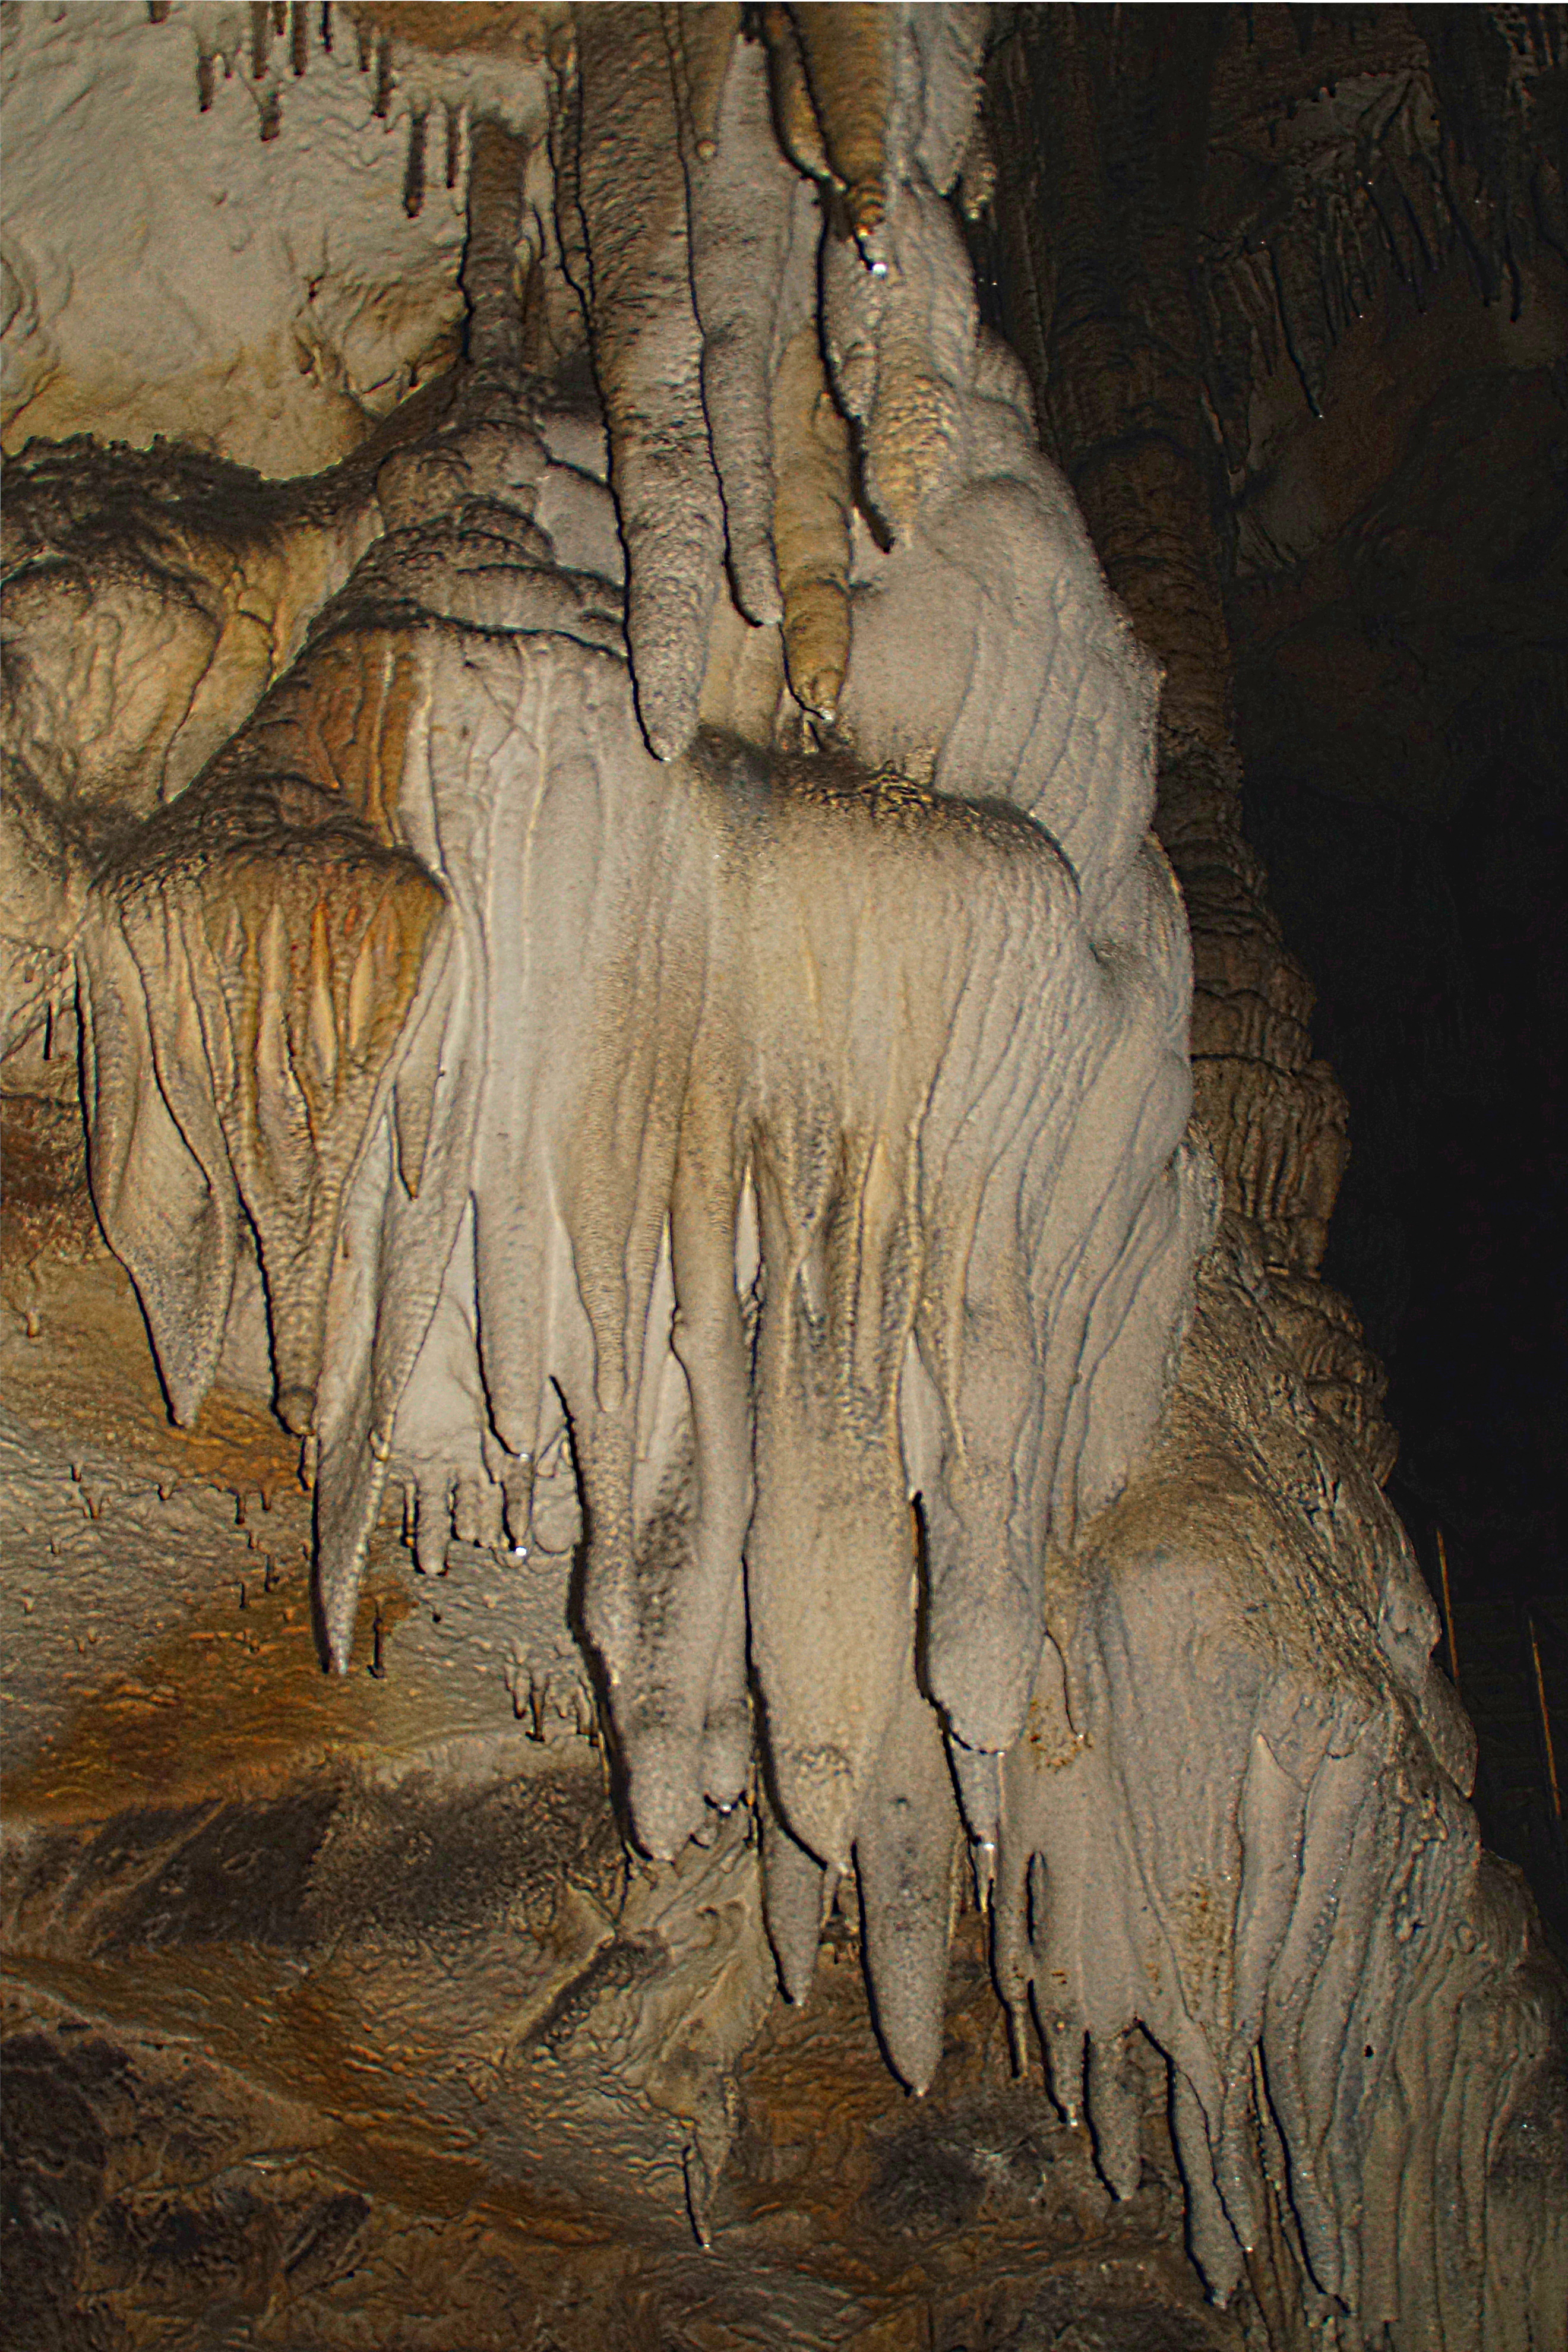 Сростки сталактитов и сталагмитов в Азишской пещере. Фото Морошкина В.В.